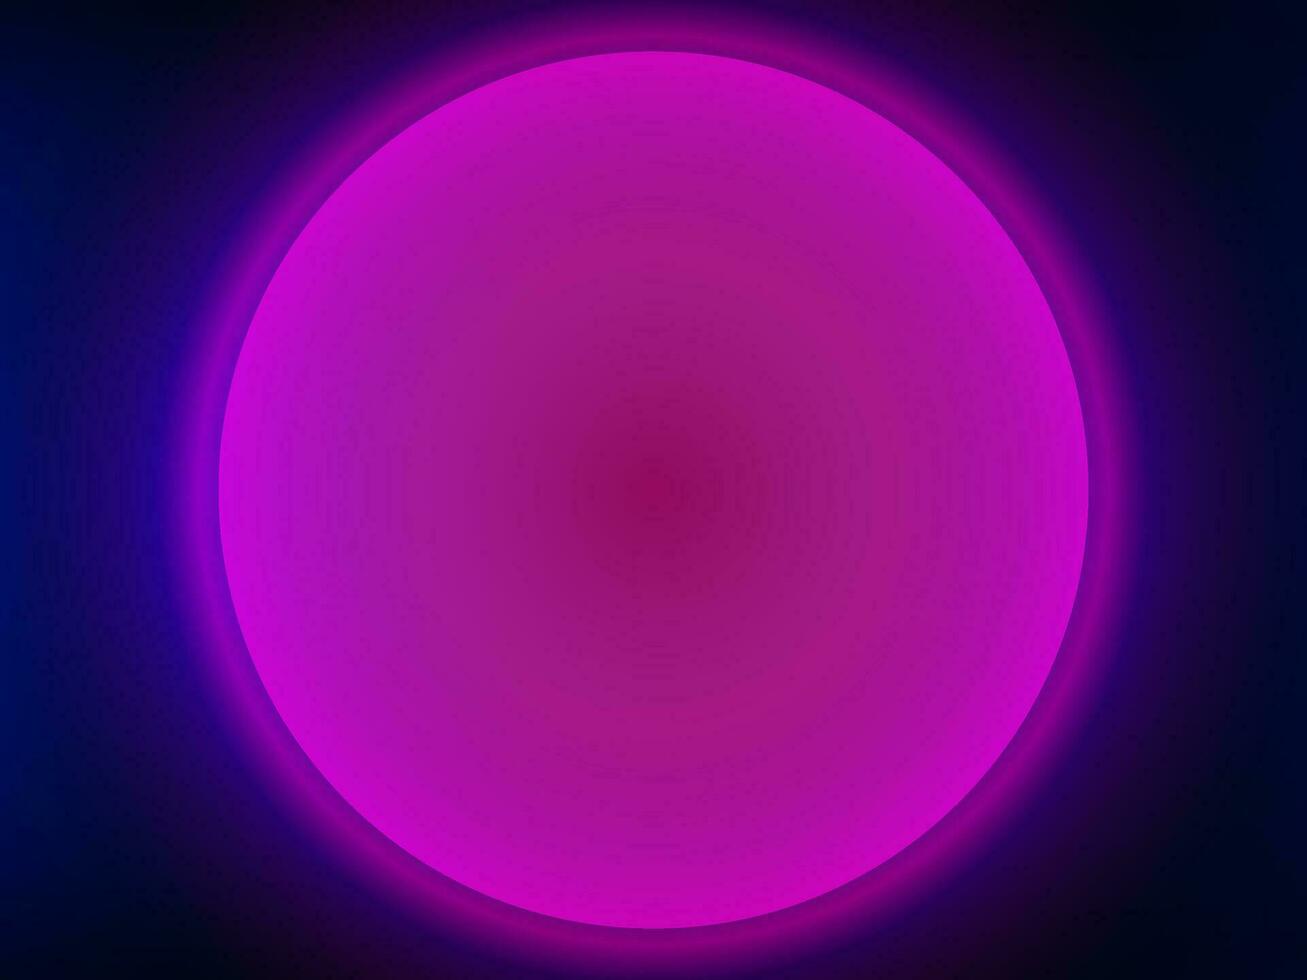 Rosa Taste Attrappe, Lehrmodell, Simulation Design auf schwarz und Blau Farbe, ein lila Kreis mit ein hell Licht im das Center auf dunkel Blau Hintergrund, vektor